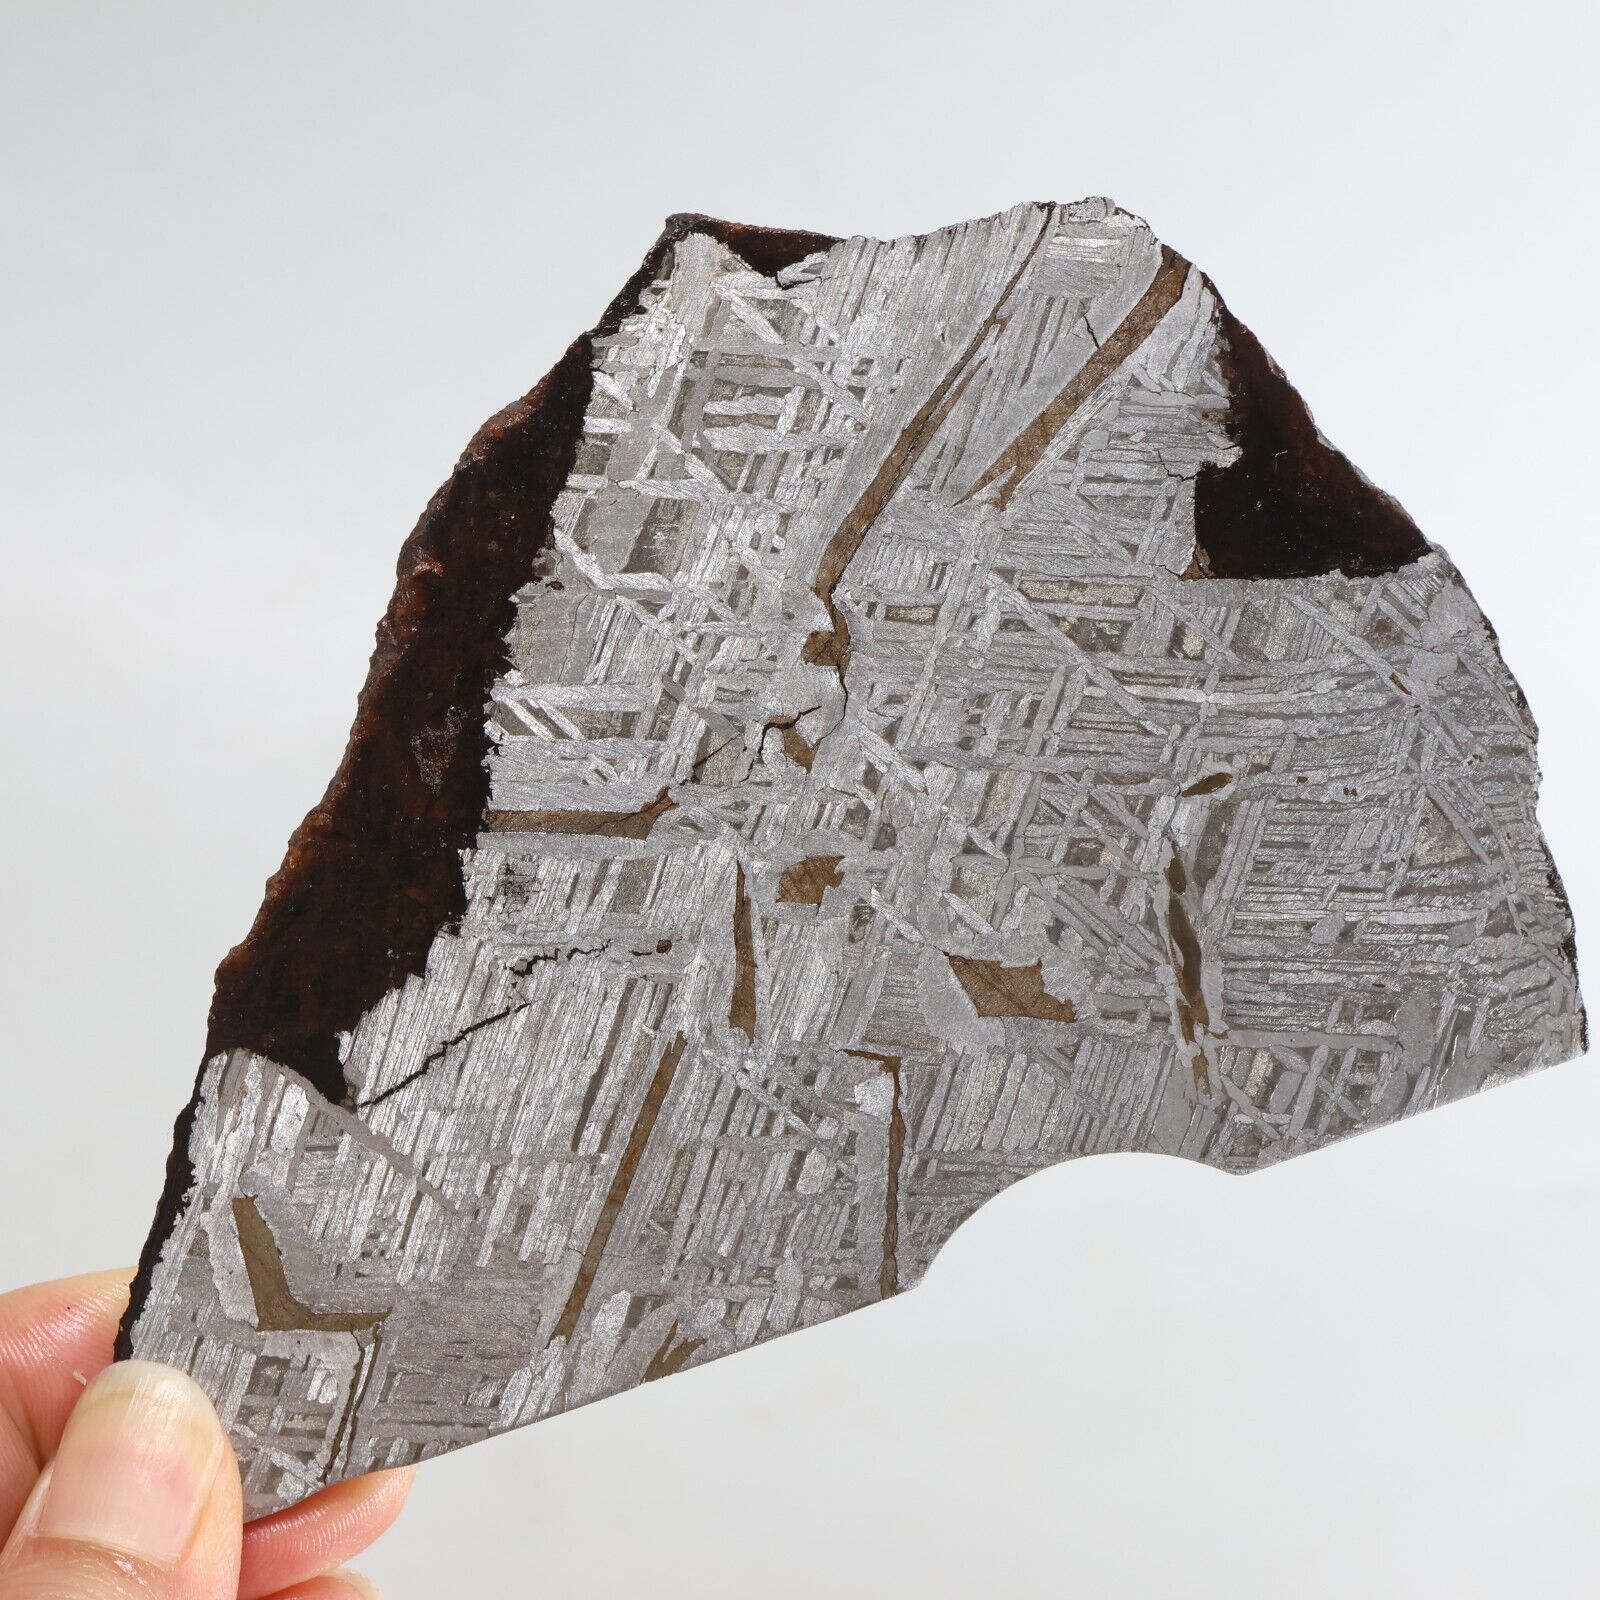 227g Iron meteorite, Muonionalusta iron meteorite slice, Natural Meteorite J335